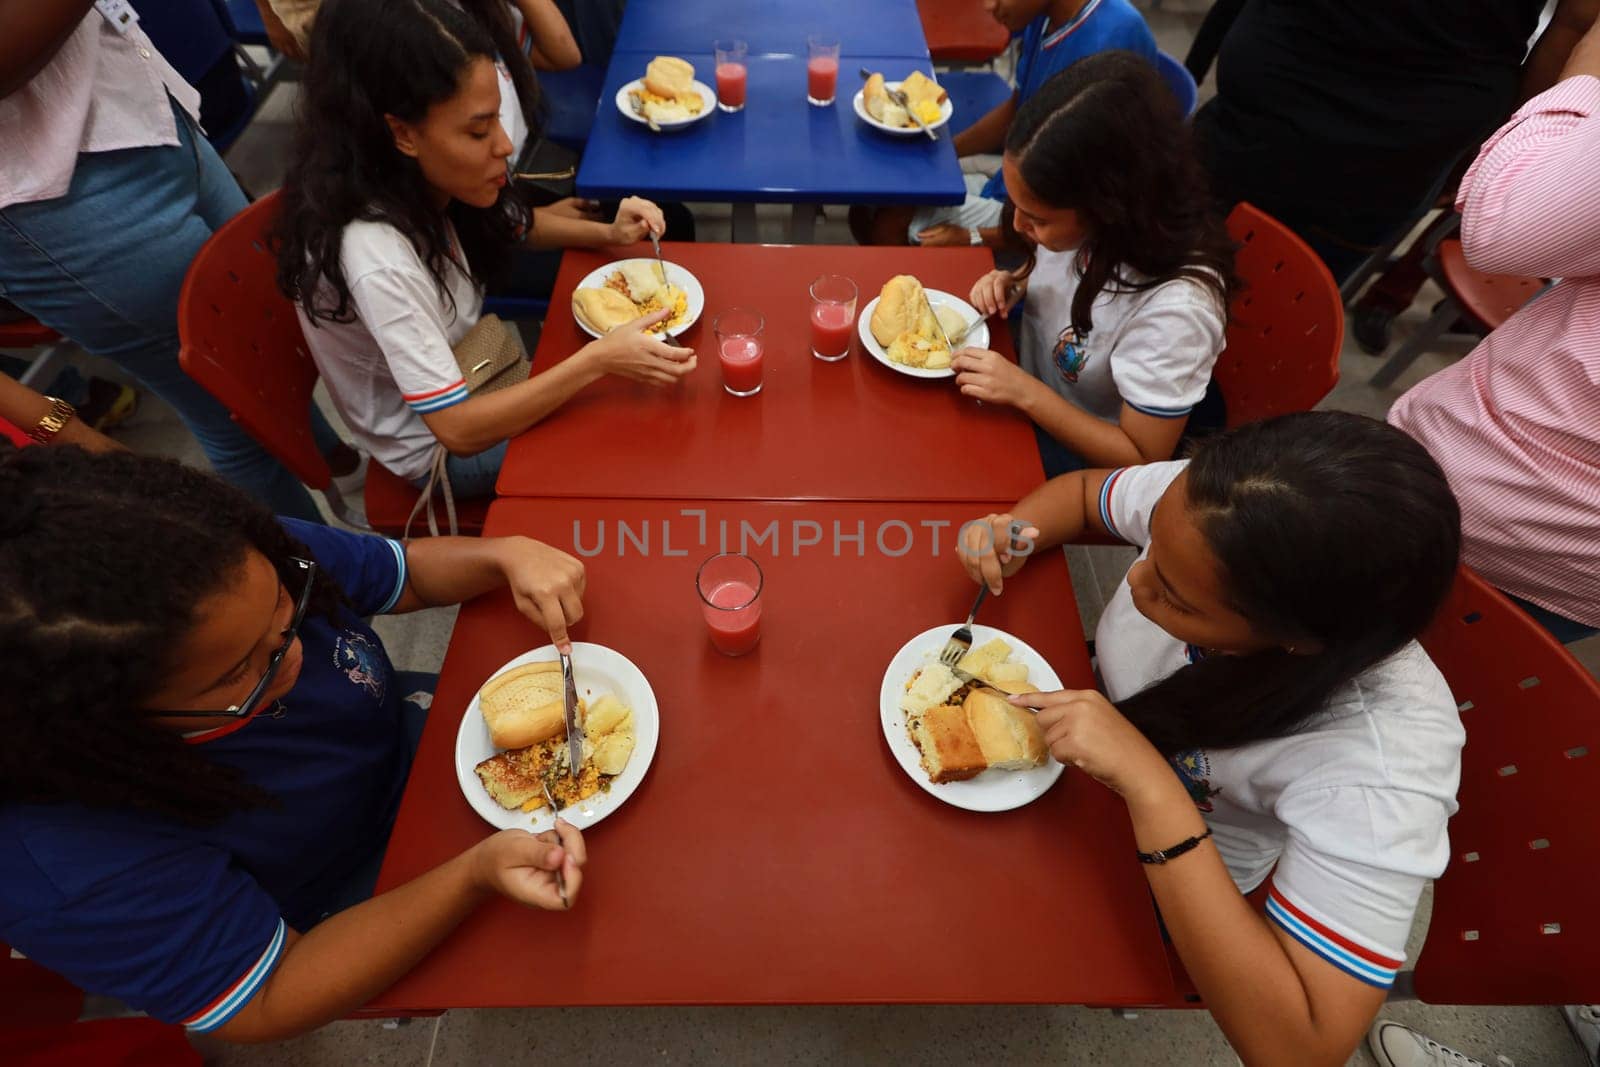 school lunch in public unit by joasouza